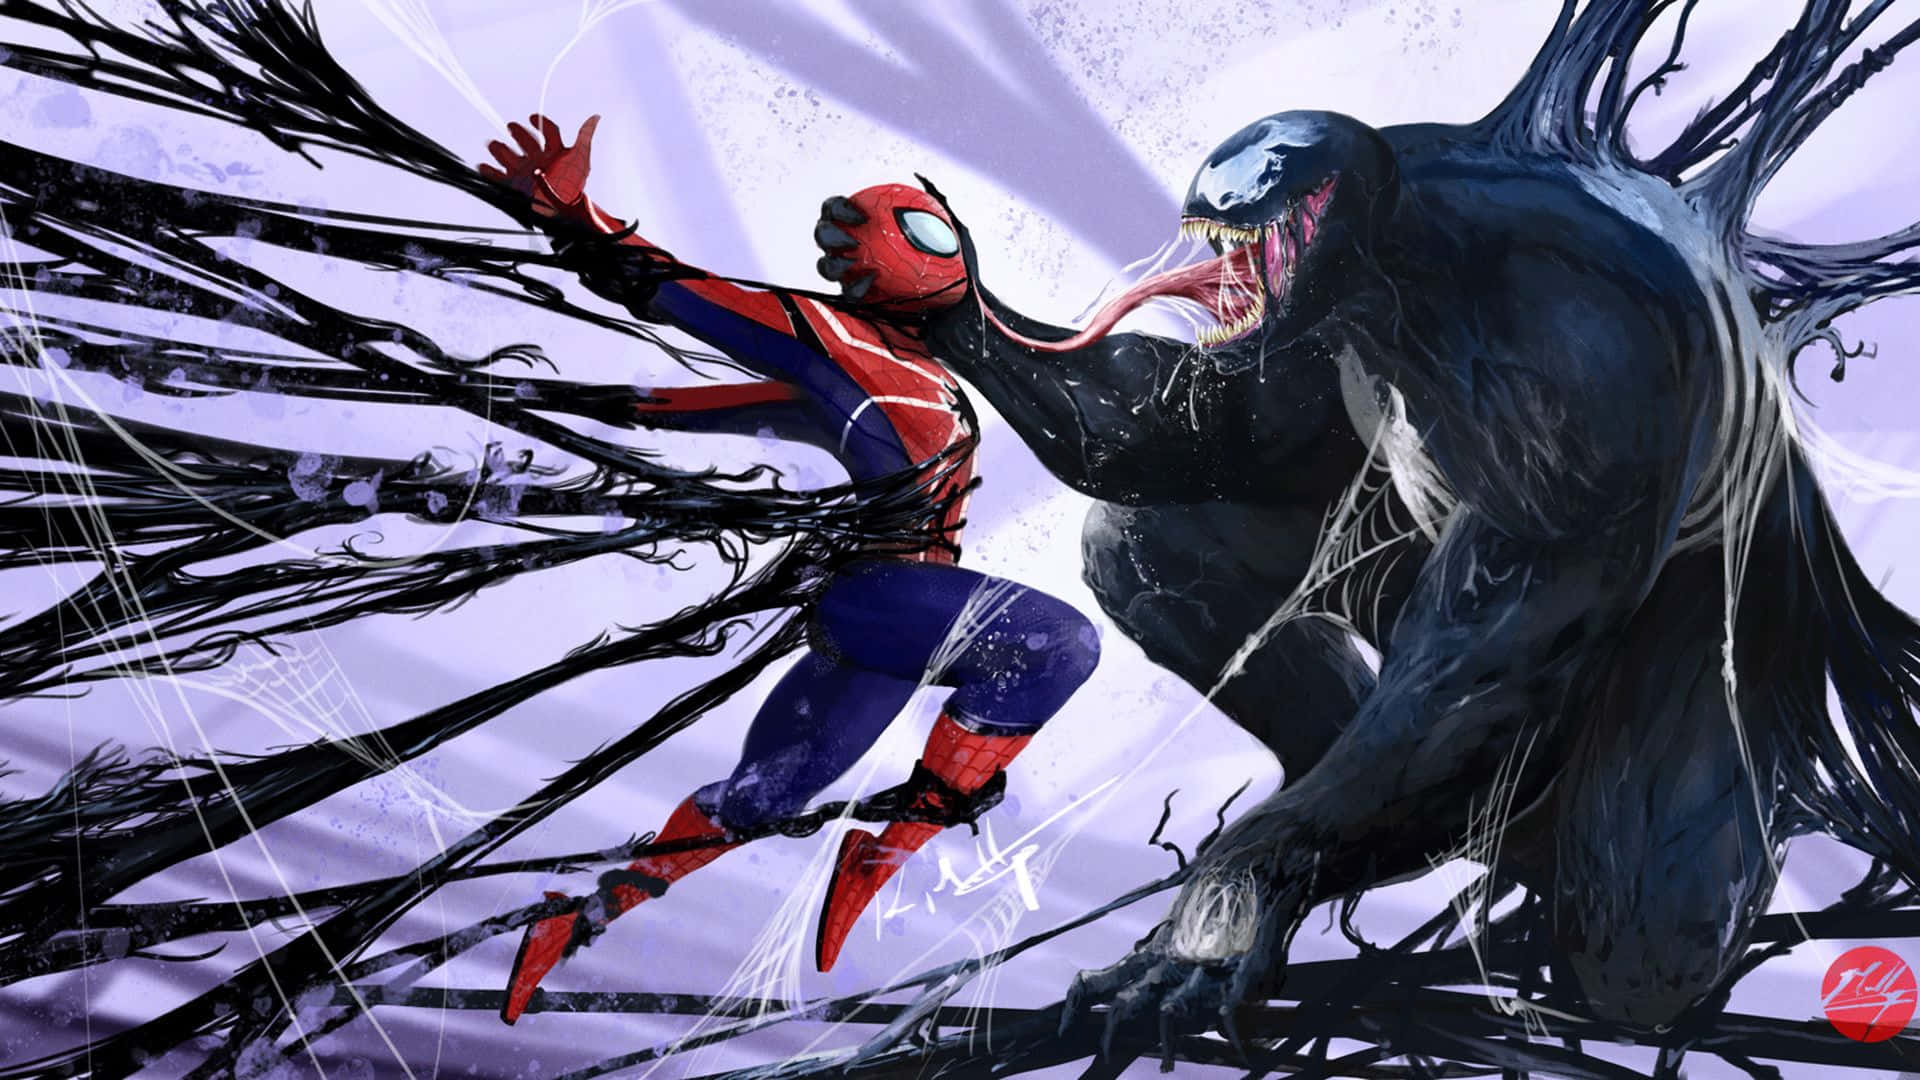 Venom Vs. Spiderman Abstract Wallpaper